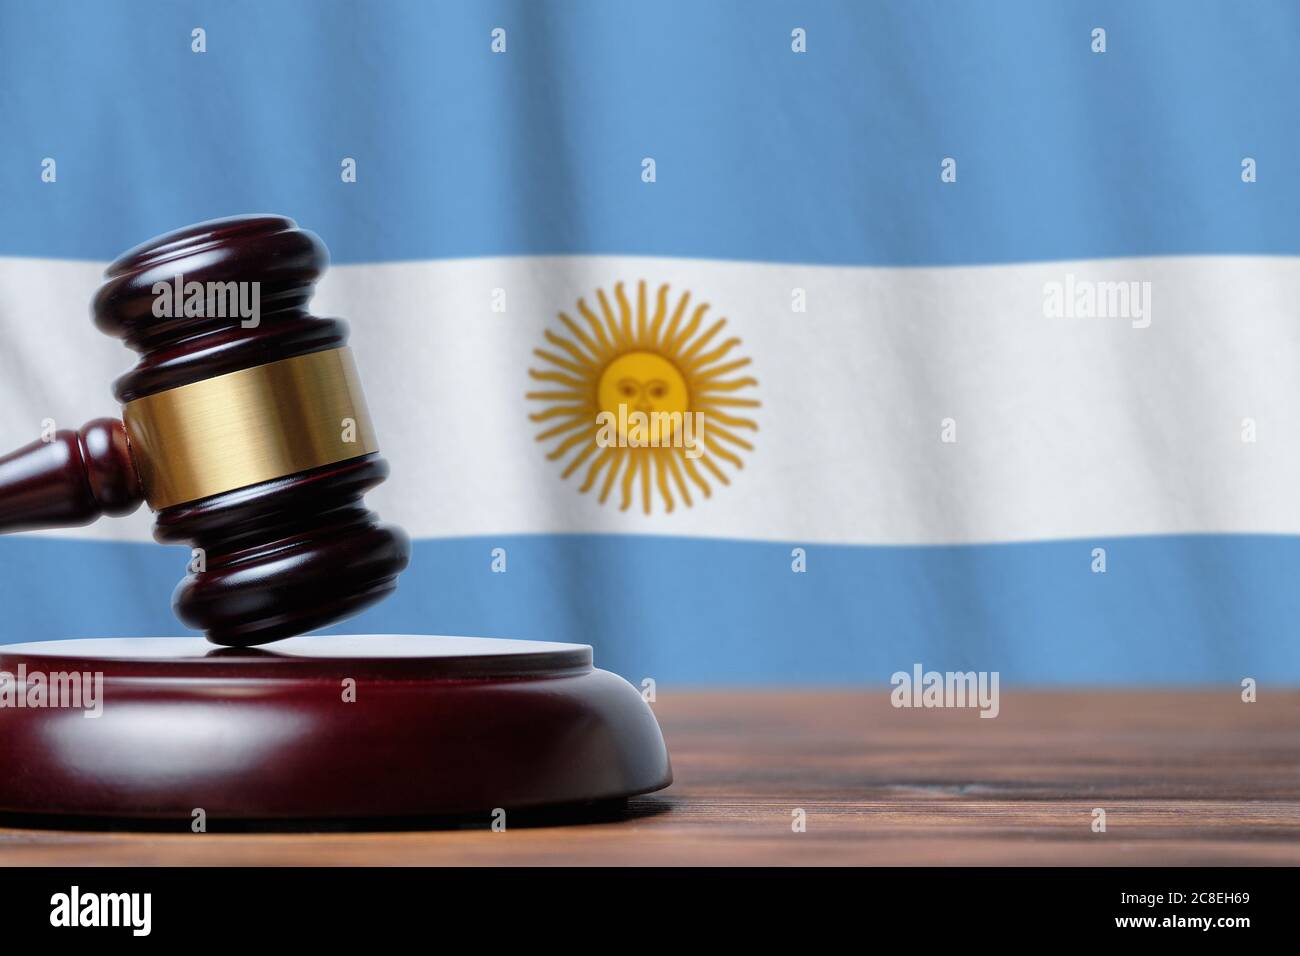 Justiz und Gerichtskonzept in der Argentinischen Republik. Richter Hammer auf einem Hintergrund Flagge. Stockfoto